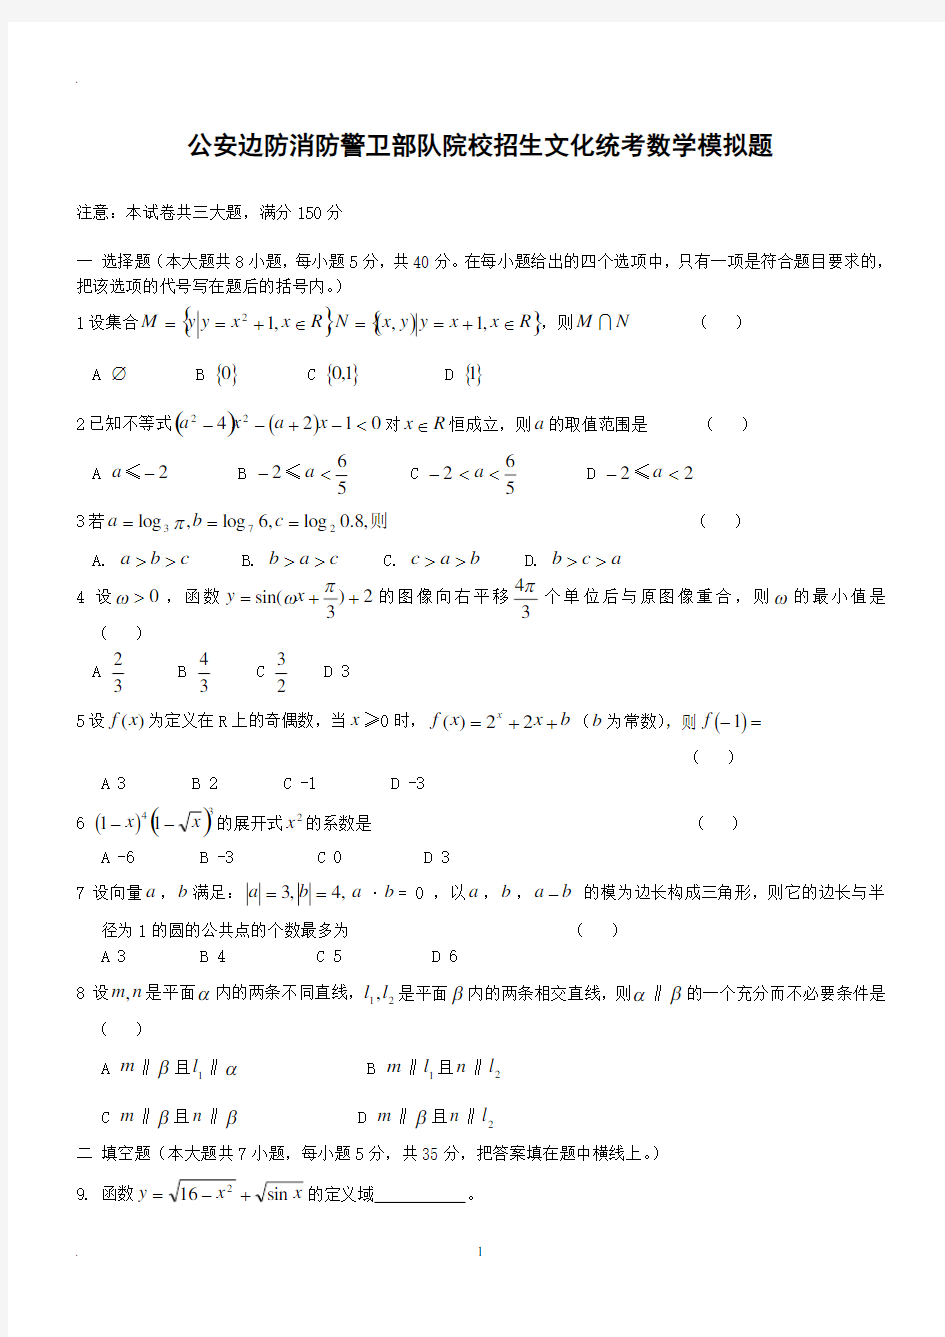 士兵考军校数学模拟试题(2020年整理).pdf